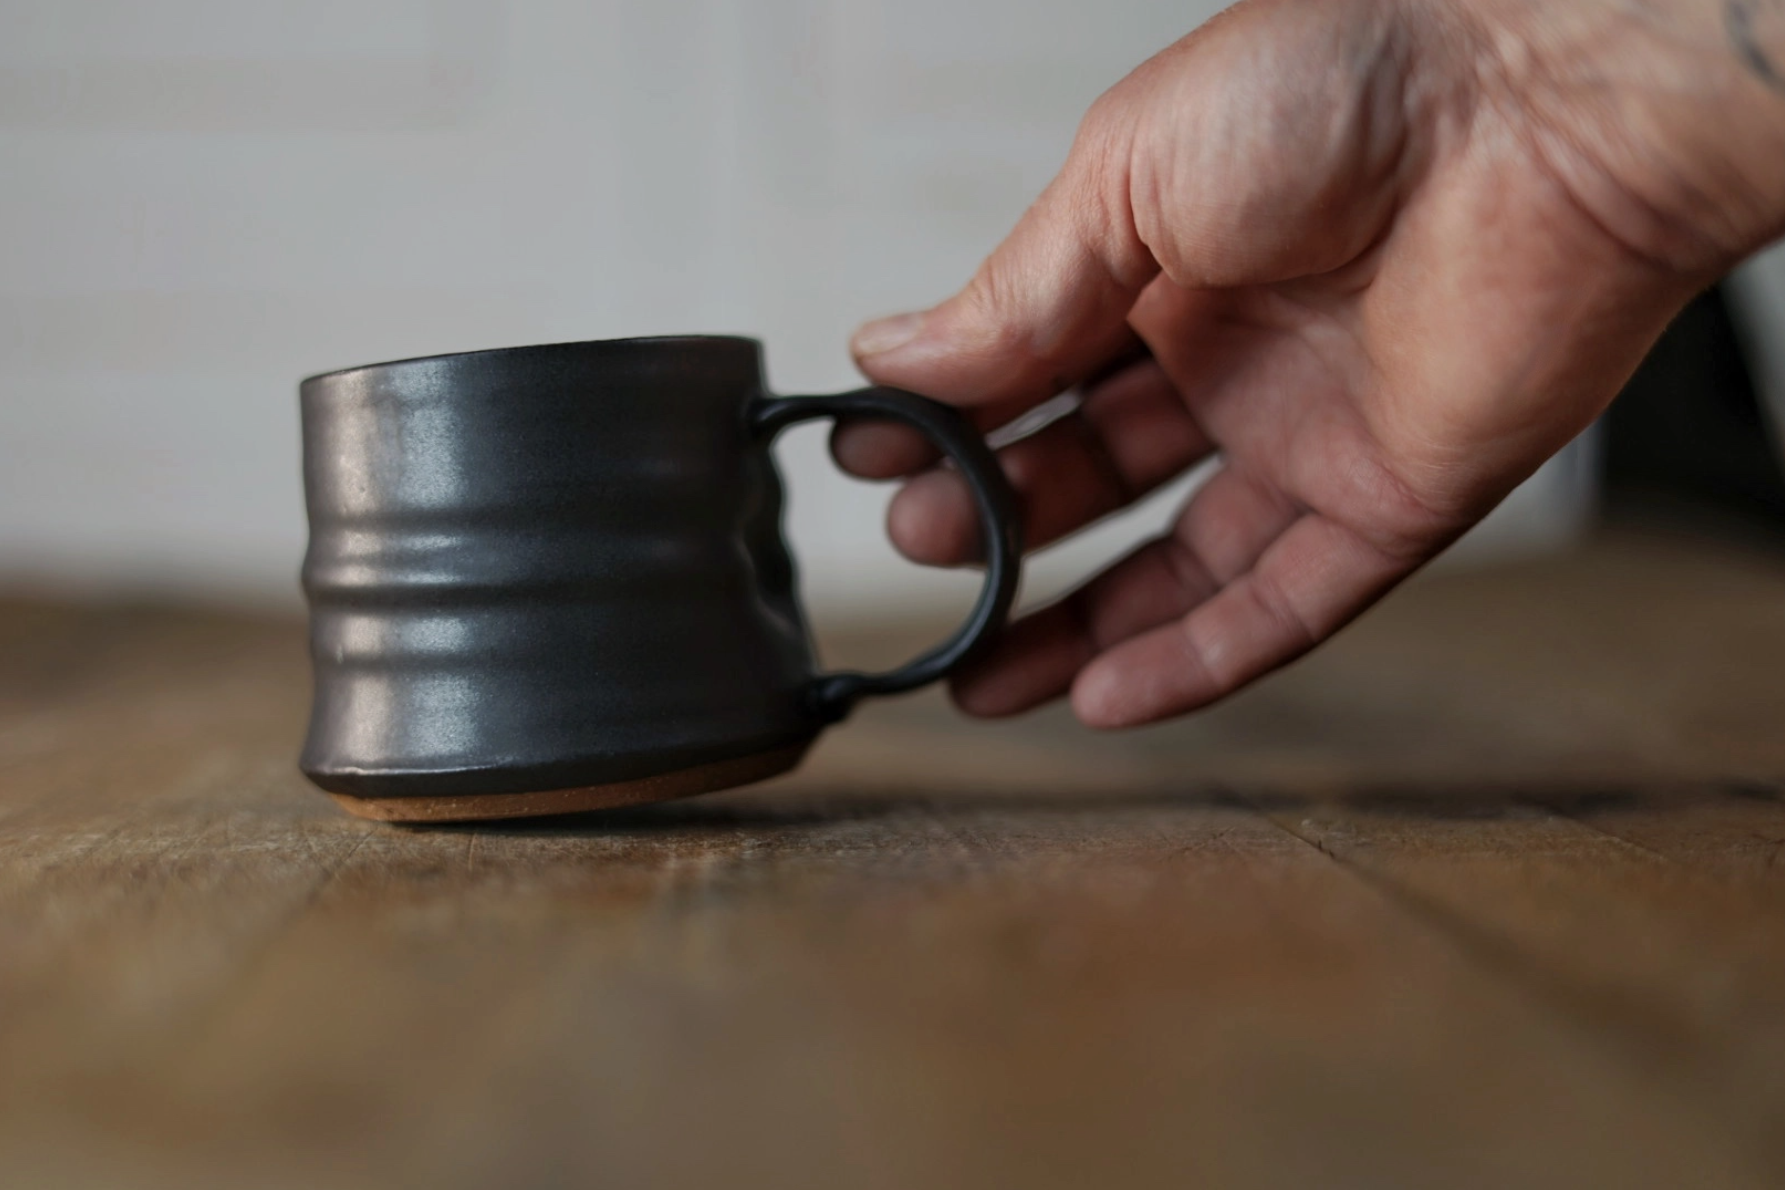 Petite Espresso/Tea Cozy Mug